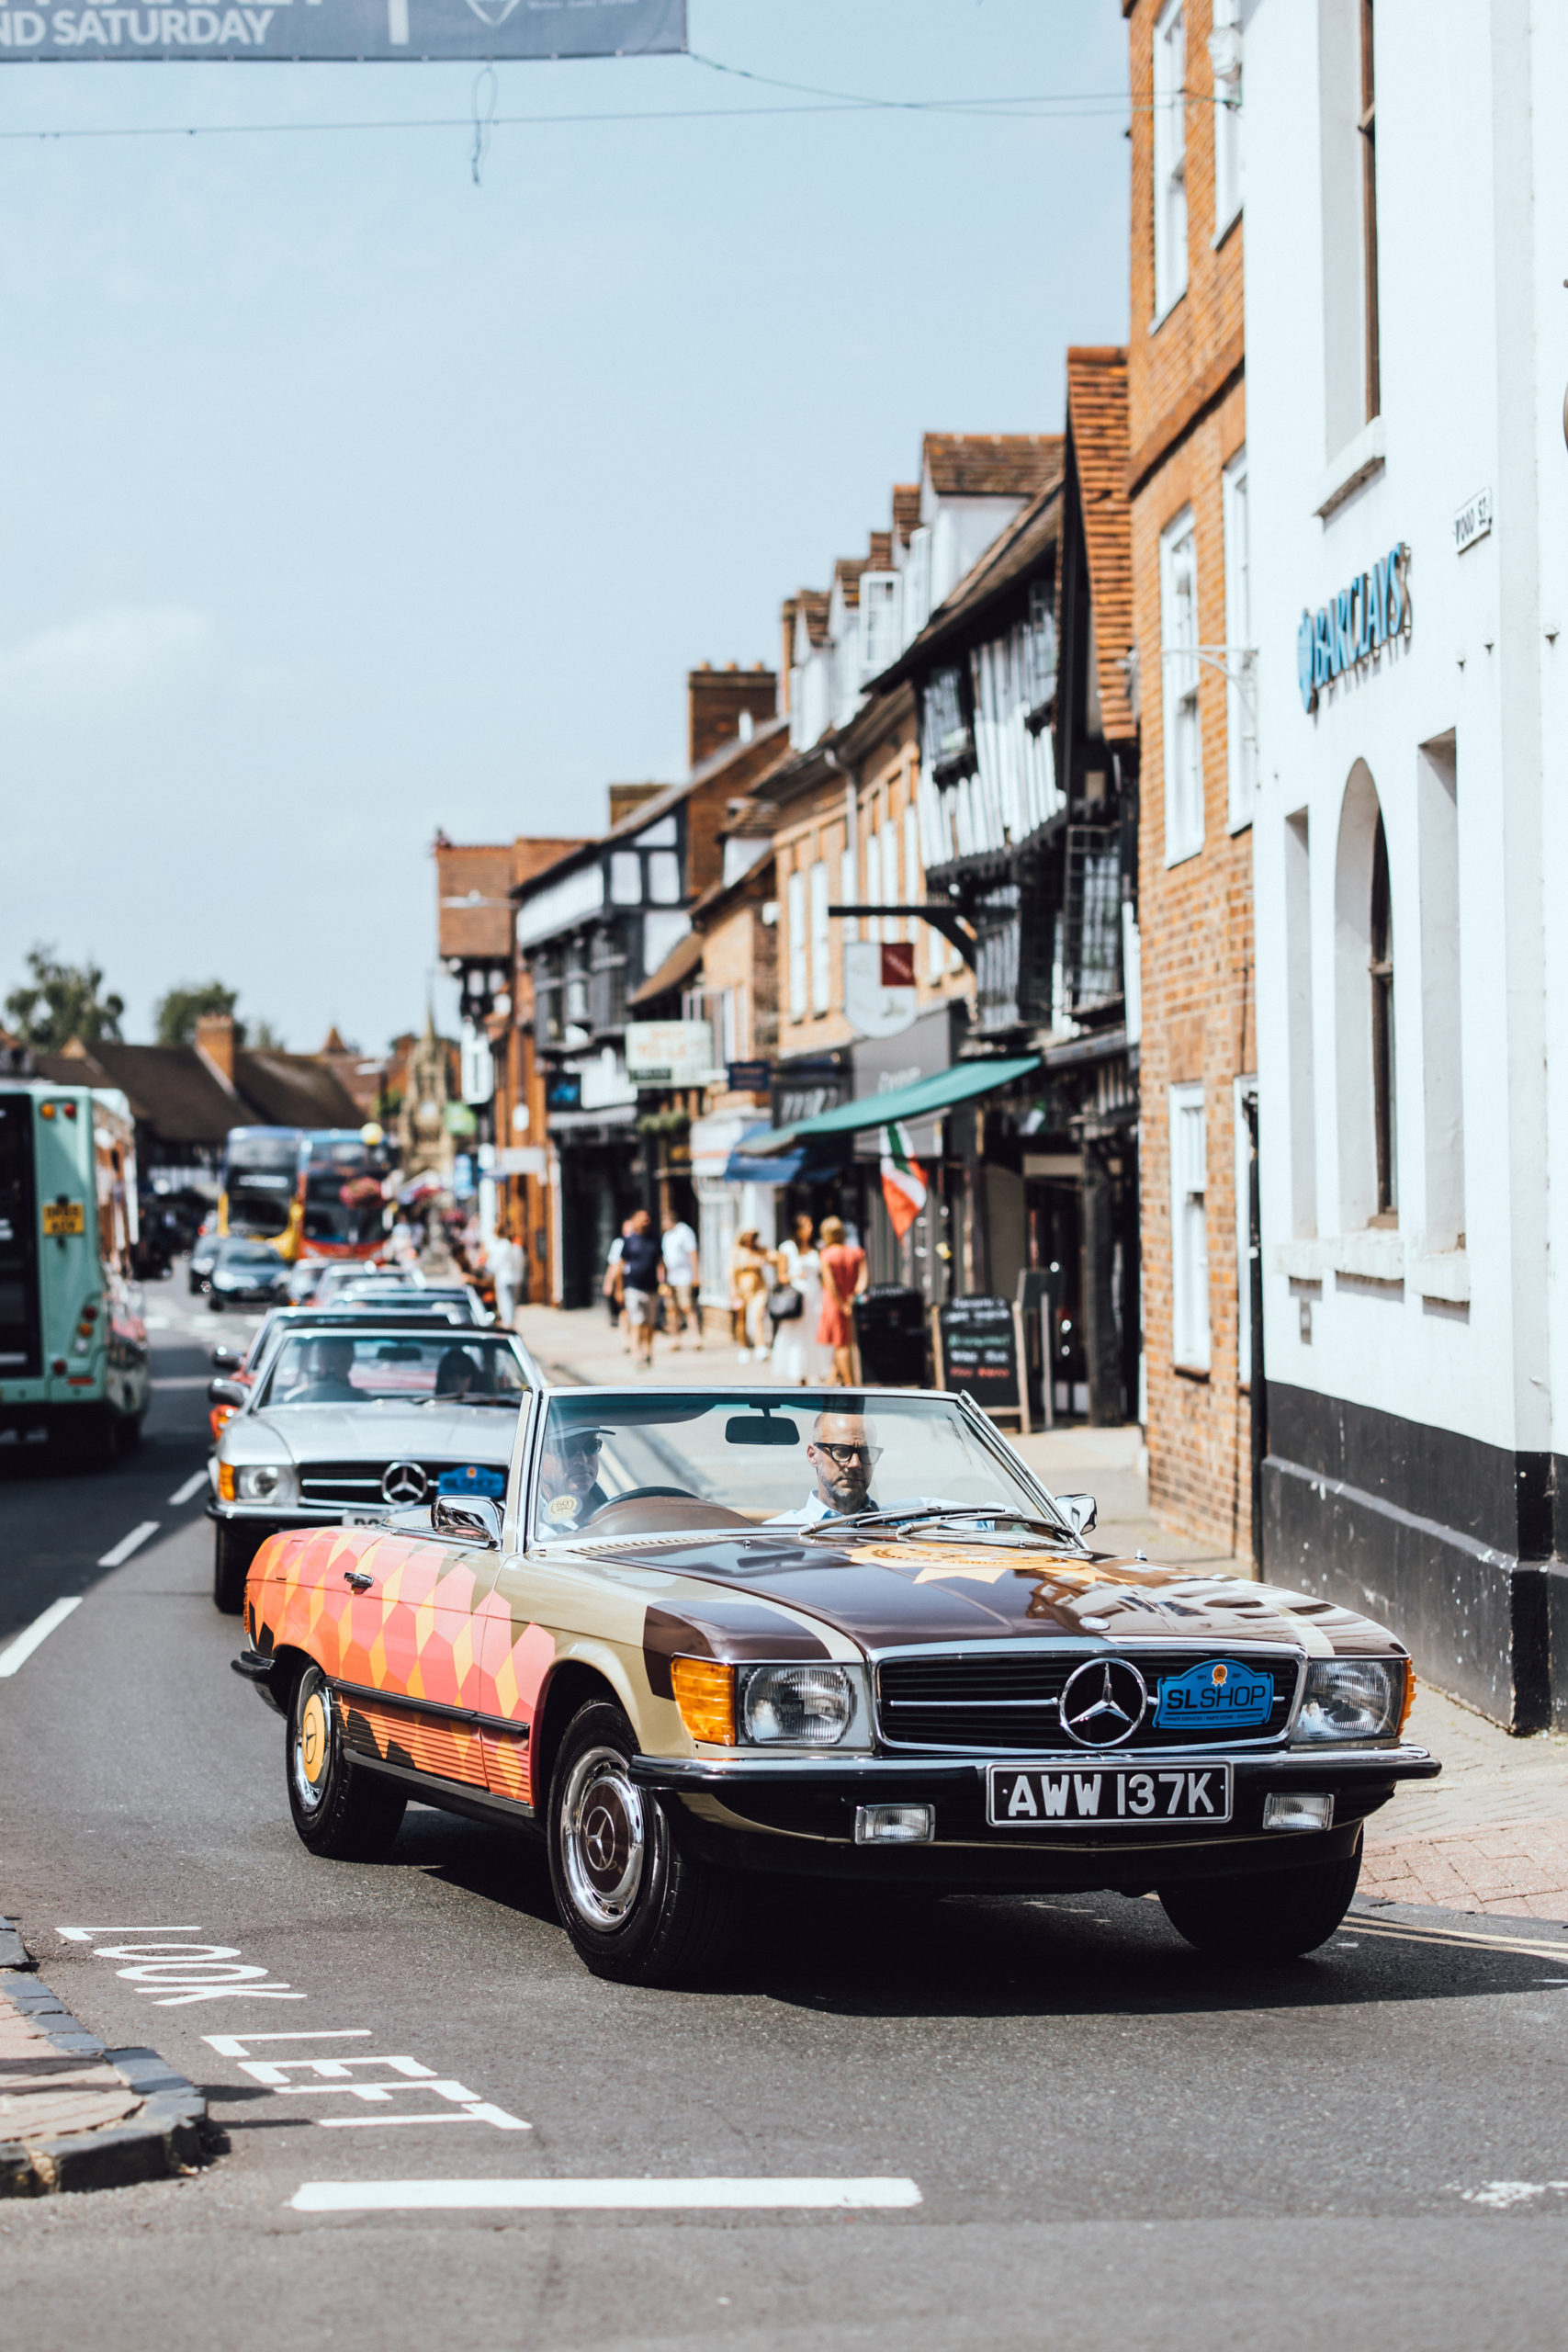 SLSHOP's Art Car driving through Stratford-Upon Avon.